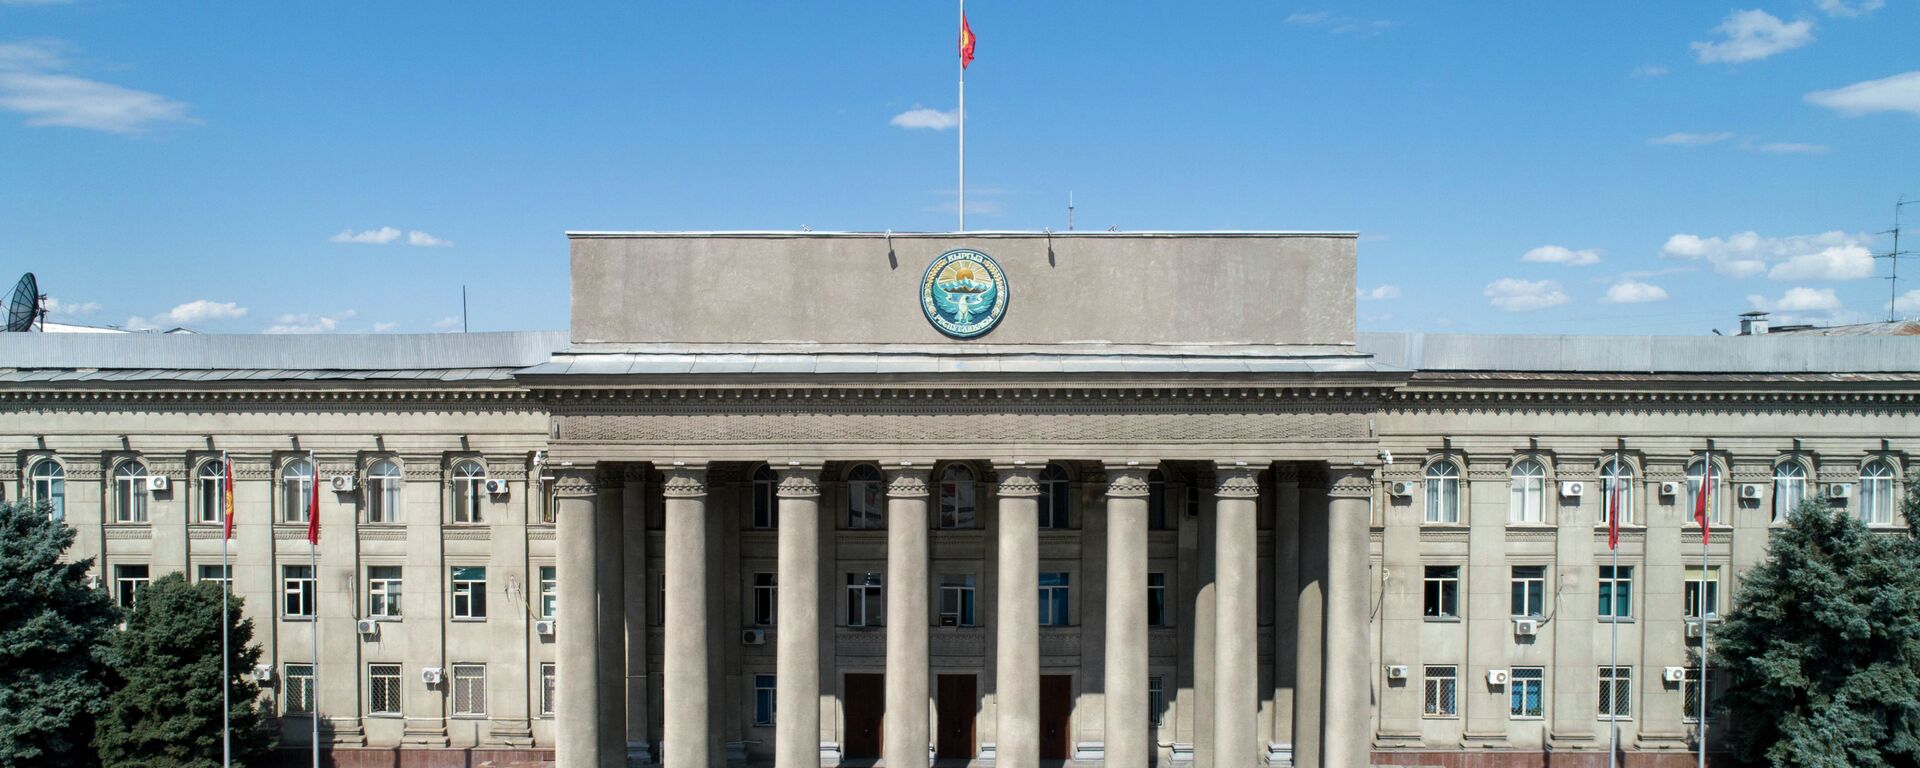 Здание правительства КР в Бишкеке. Архивное фото - Sputnik Кыргызстан, 1920, 01.02.2021